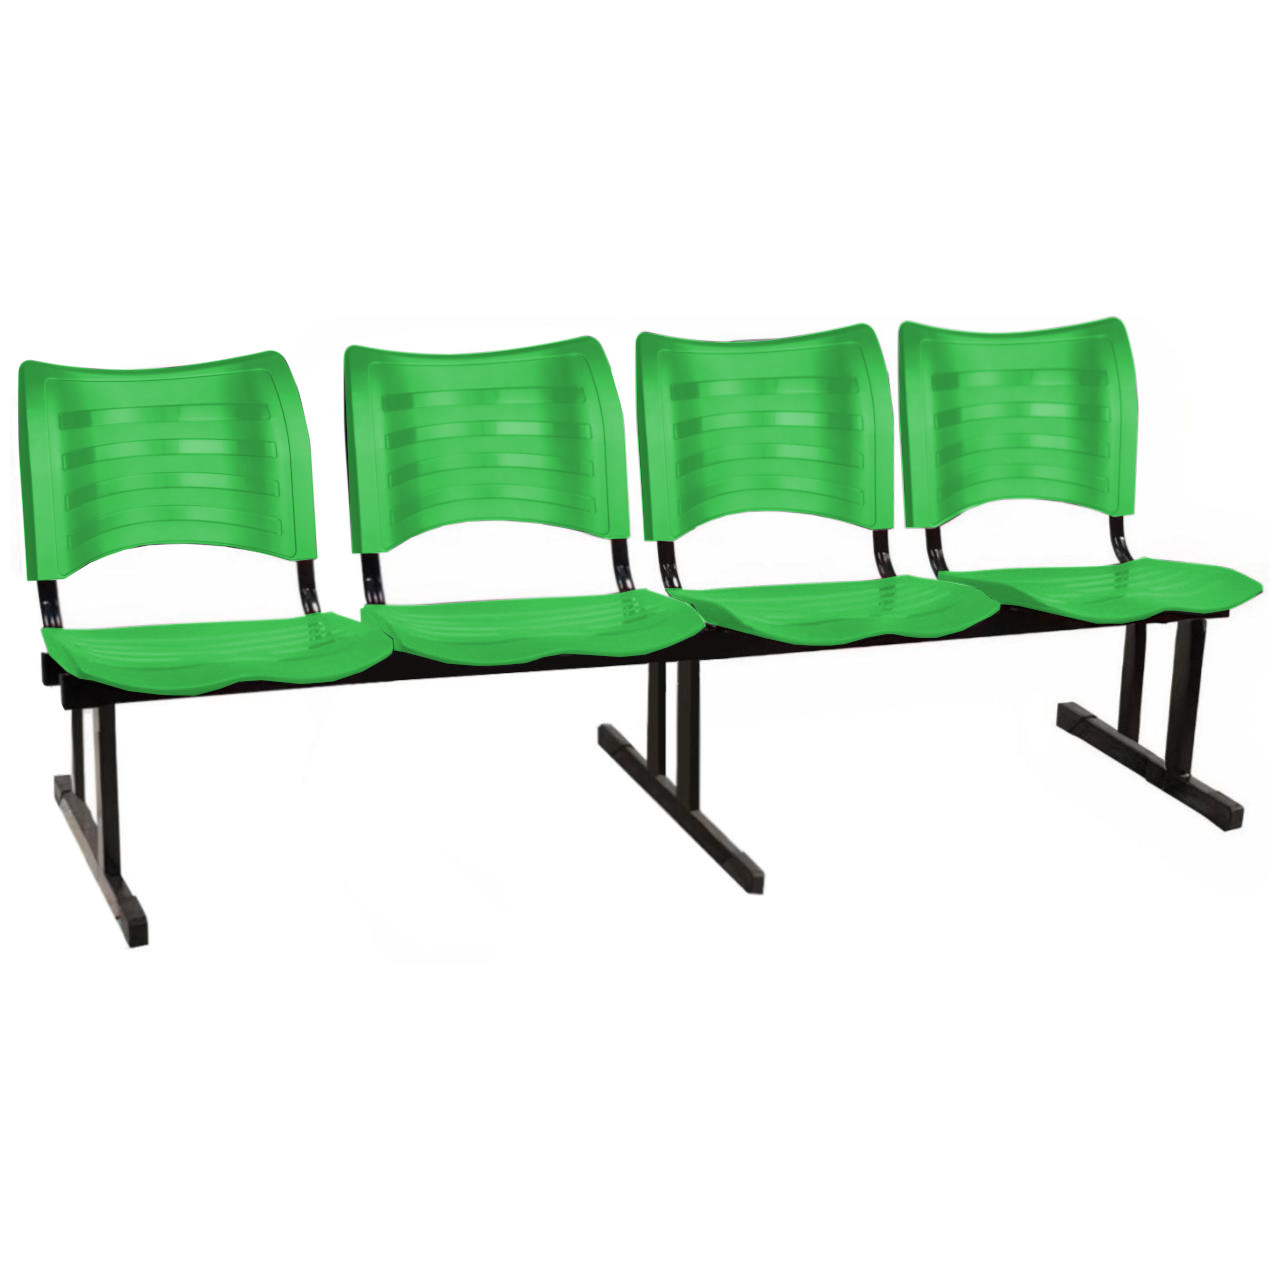 Cadeira Longarina PLÁSTICA 04 Lugares – Cor Verde – MRPLAST – 34197 Araguaia Móveis para Escritório